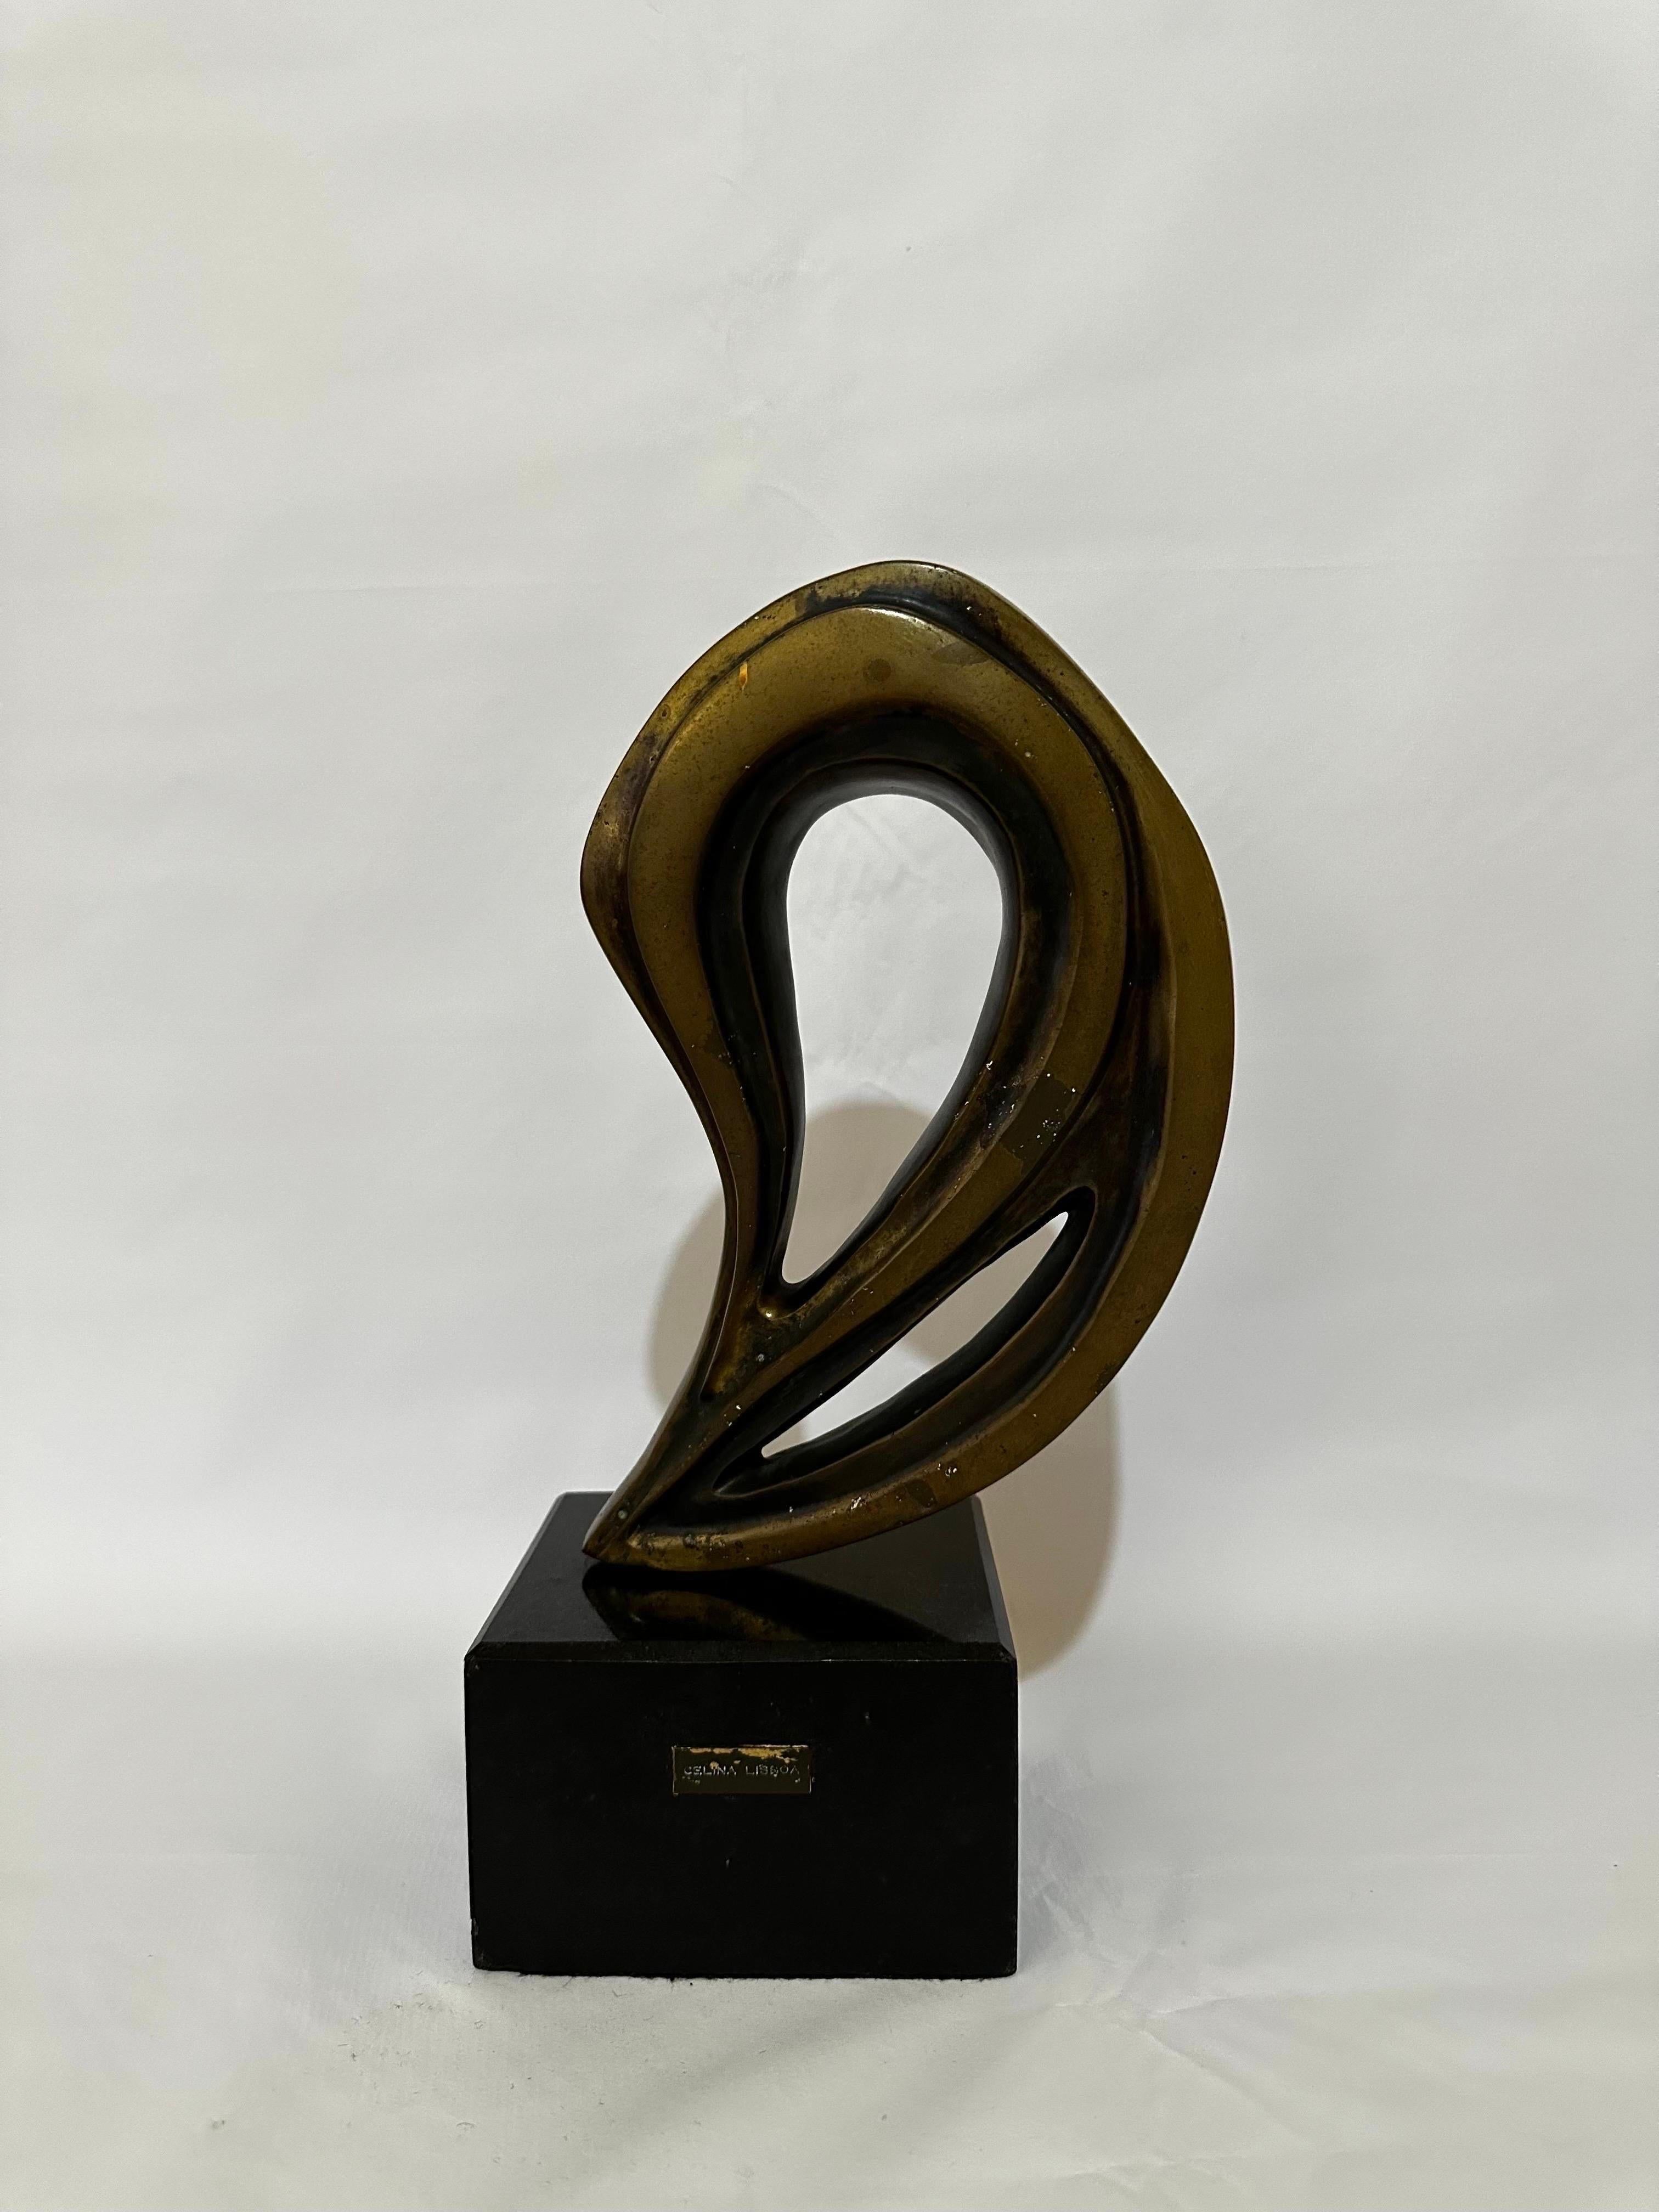 Sculpture abstraite brésilienne moderne en bronze sur vase en granit, réalisée par la célèbre sculptrice Celina Lisboa. Signé sur le bronze et maintient l'étiquette sur la base. Numéroté 1/6 vers les années 1980.